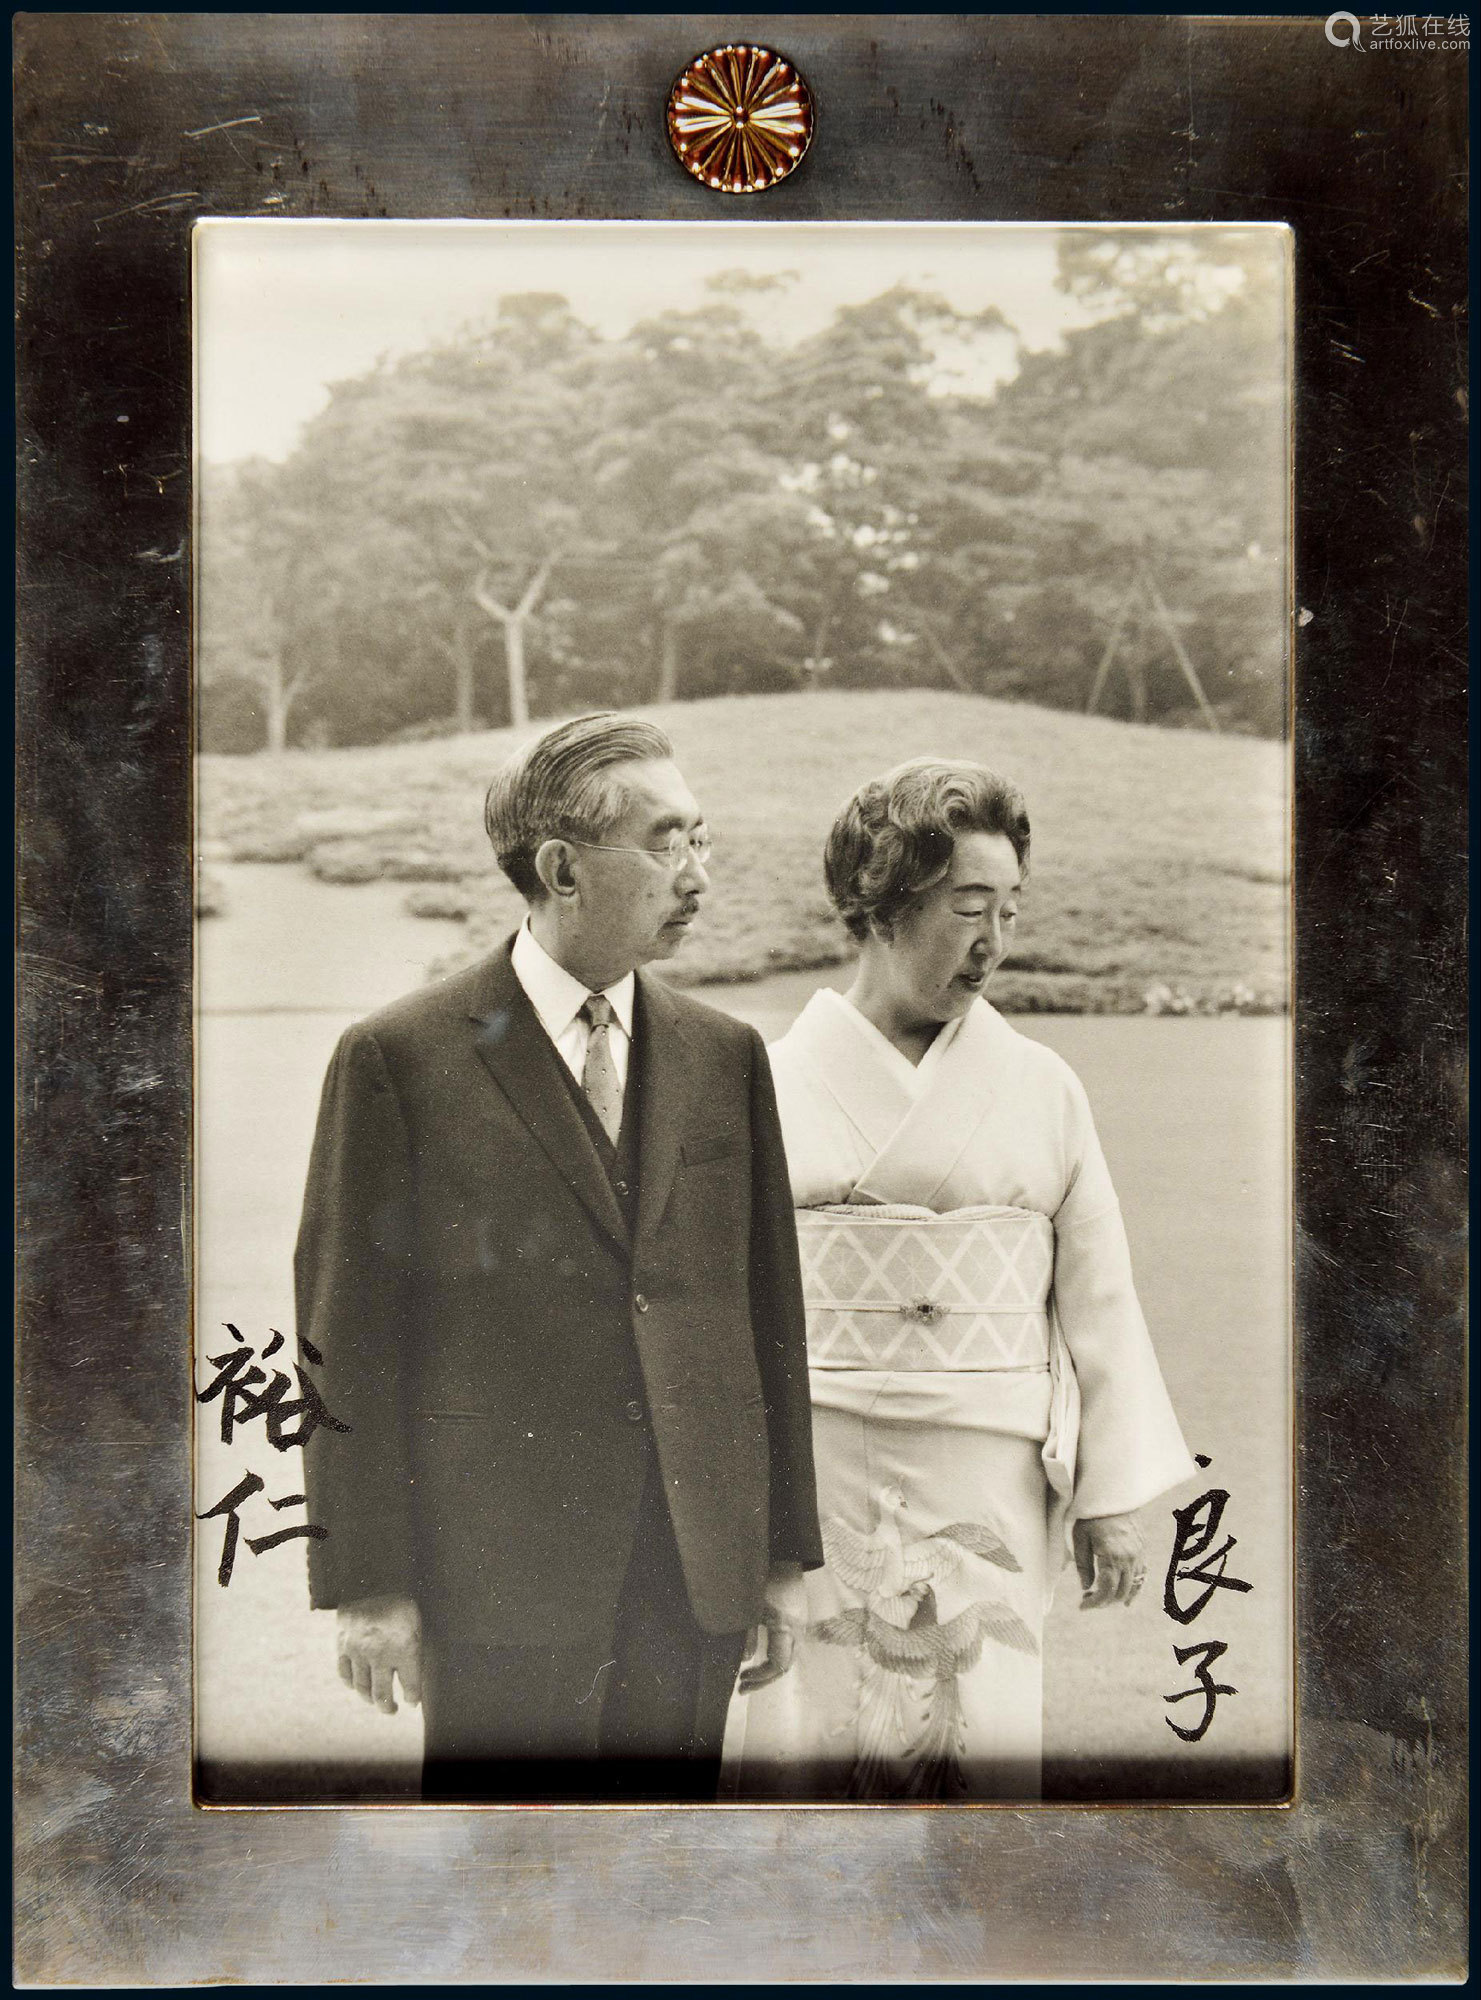 日本昭和天皇 裕仁 Hirohito 及夫人 香淳皇后 良子 Nagako 亲笔签名皇家原版照片 Deal Price Picture